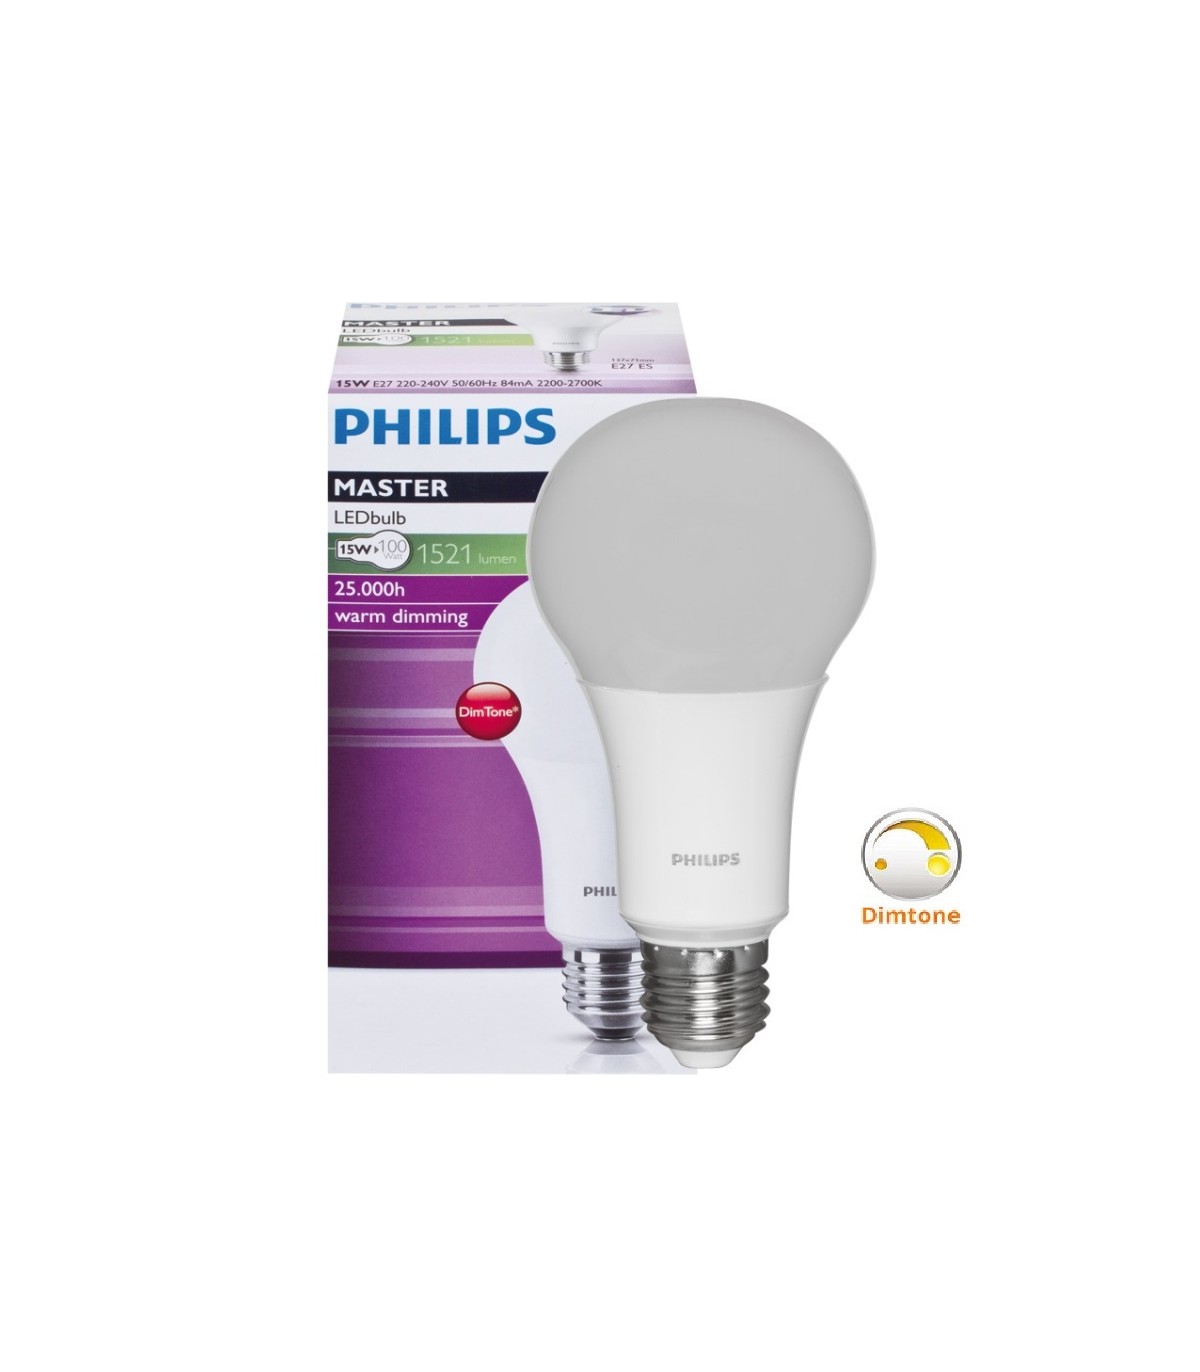 Lampe LED Value OSRAM 9.5W Culot E27 Couleur de la lumière Blanc